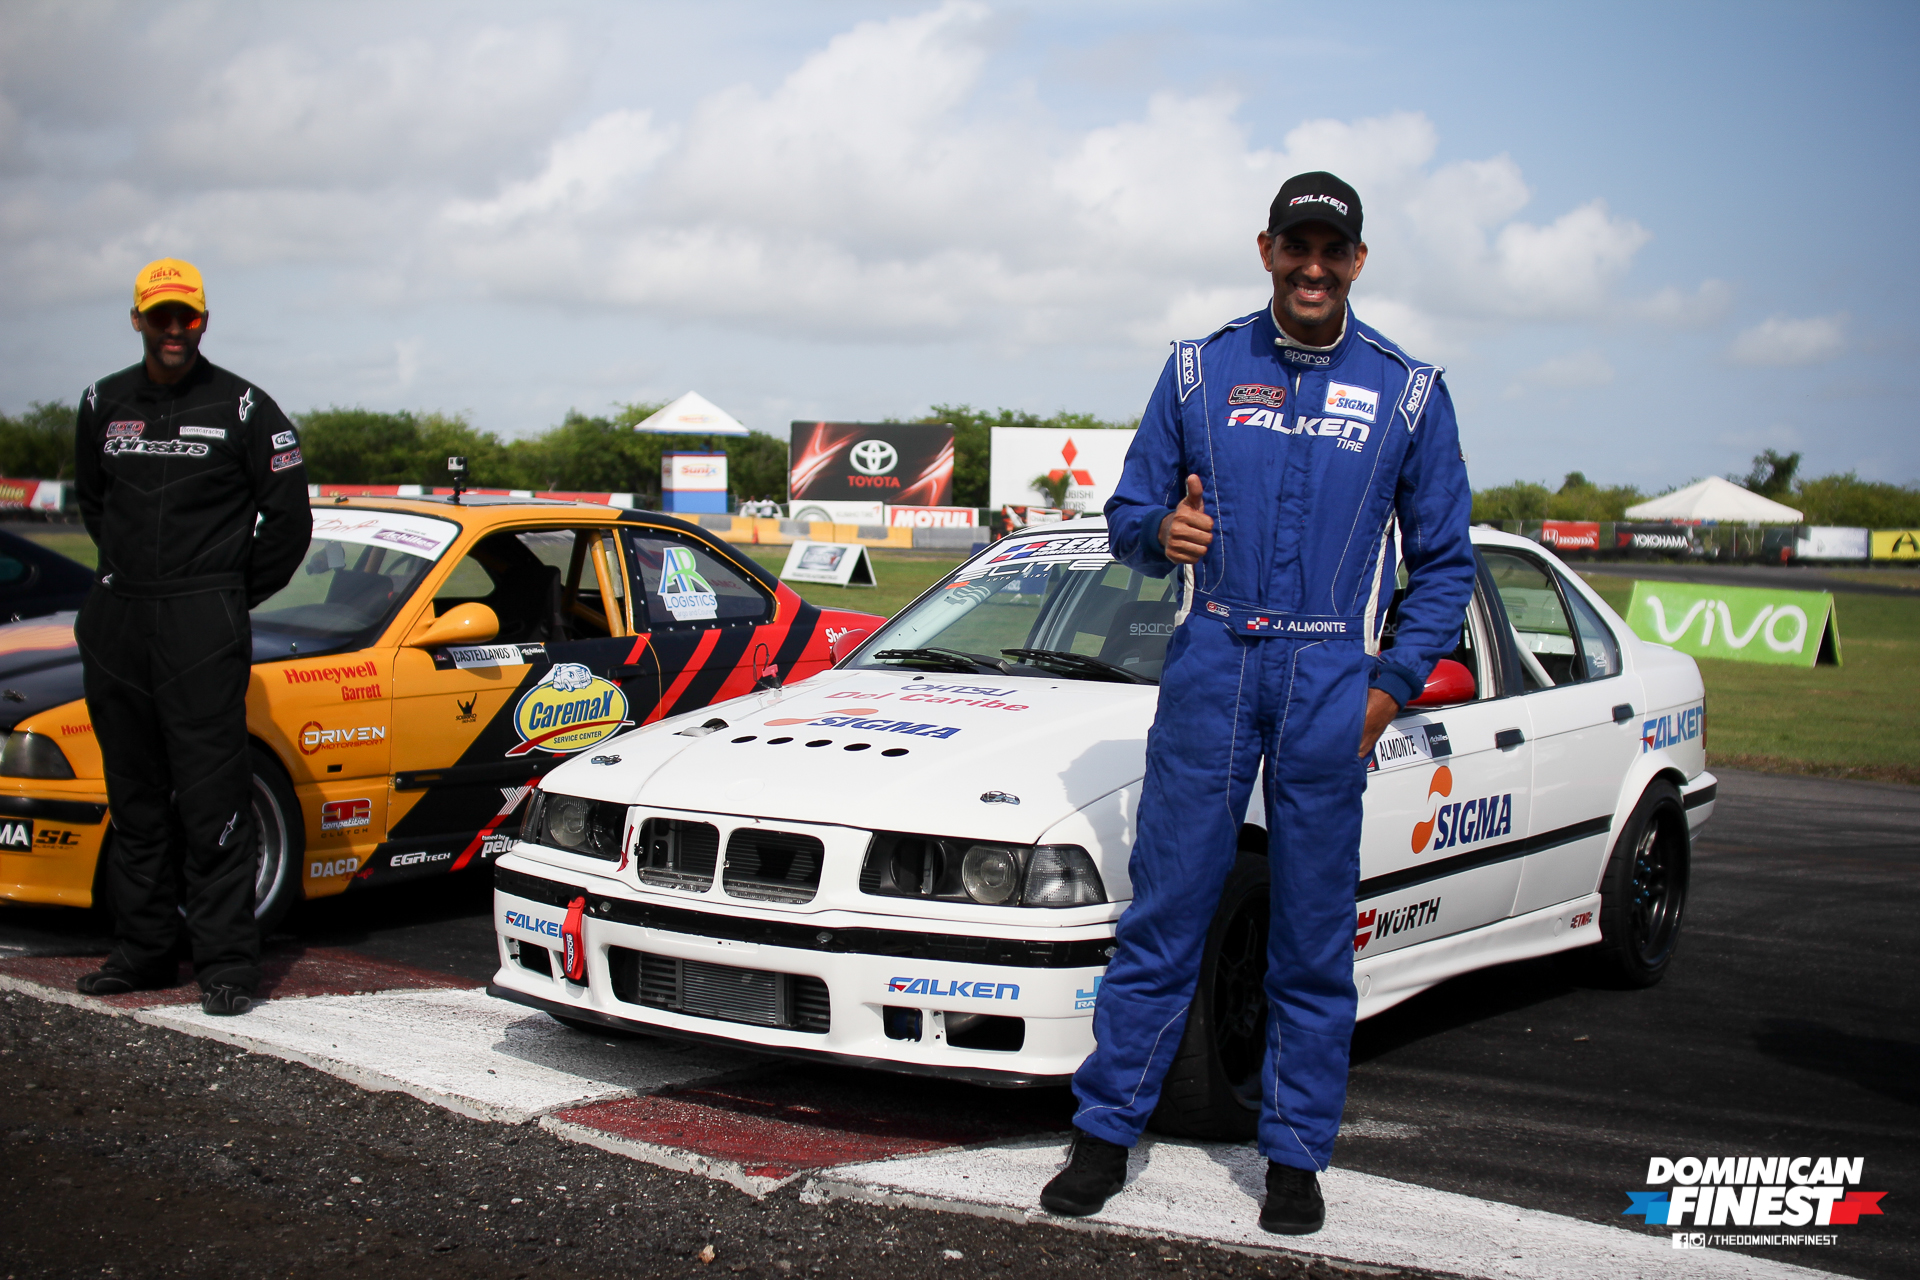 ROUND 1 | Serie Dominicana de Drift by Achilles Radial - Autódromo Sunix.